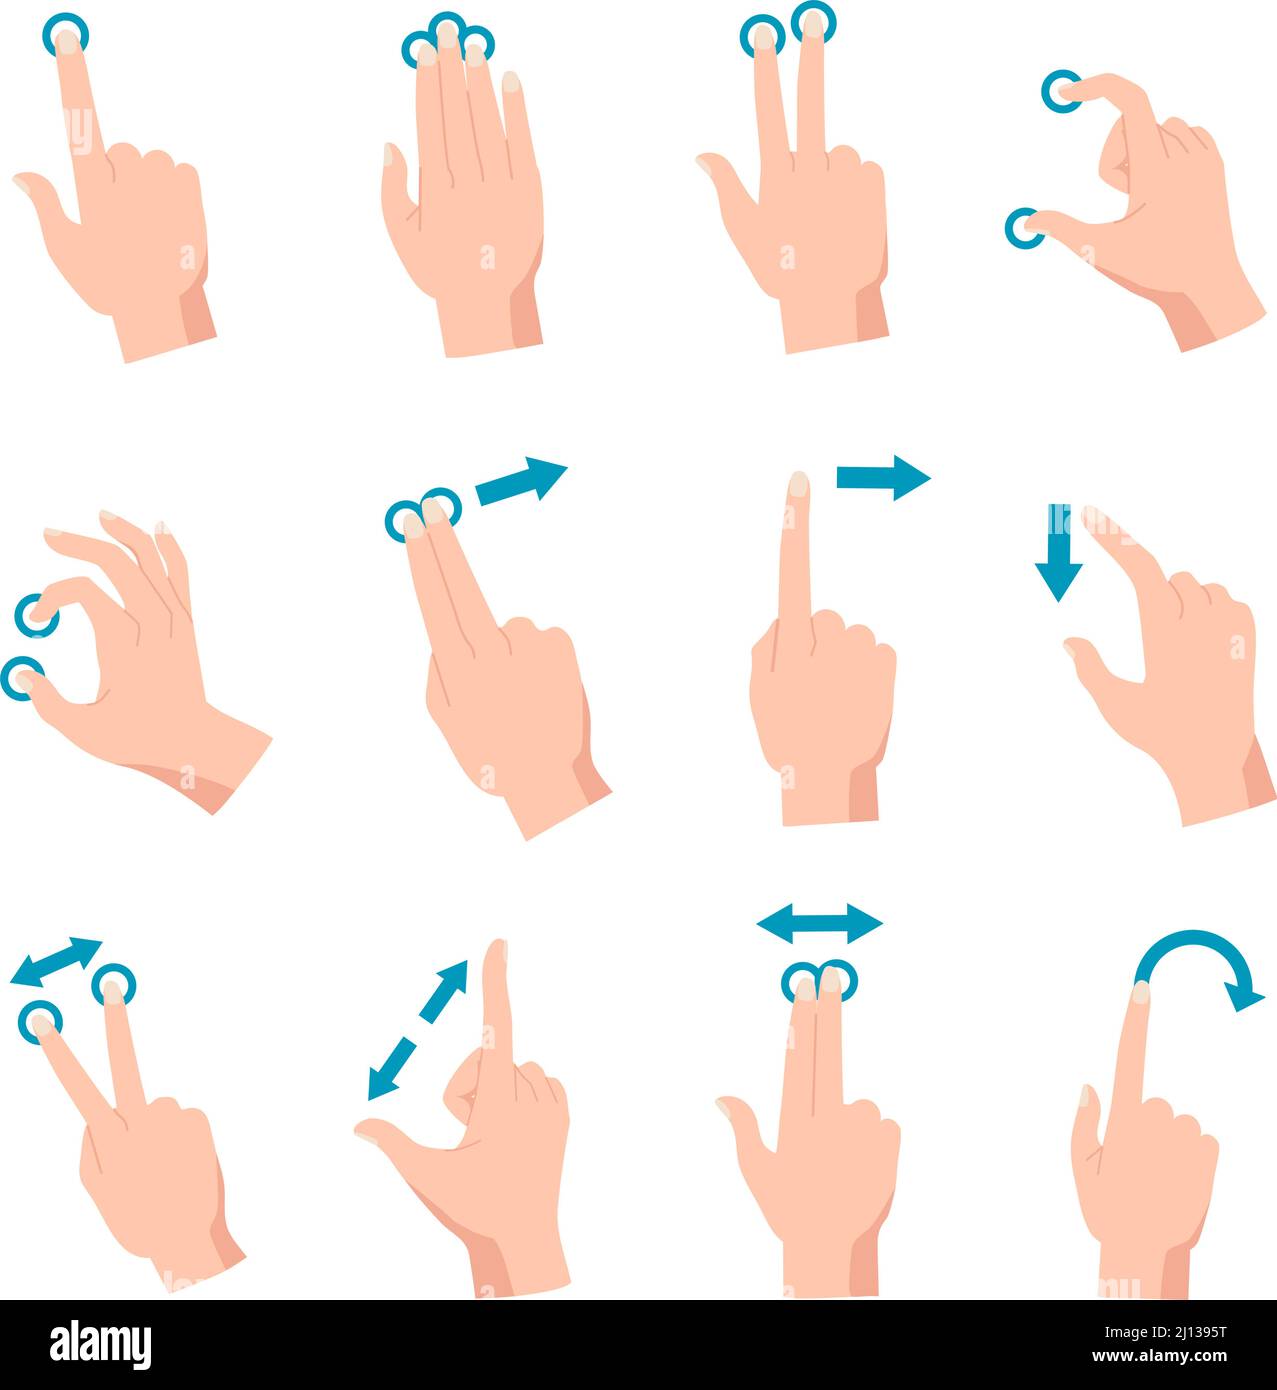 Handgesten für Smartphone, Tablet oder interaktiven Touchscreen des Laptops. Finger wischen, berühren, zoomen, ziehen und drehen Vektorset des Telefonbildschirms Stock Vektor